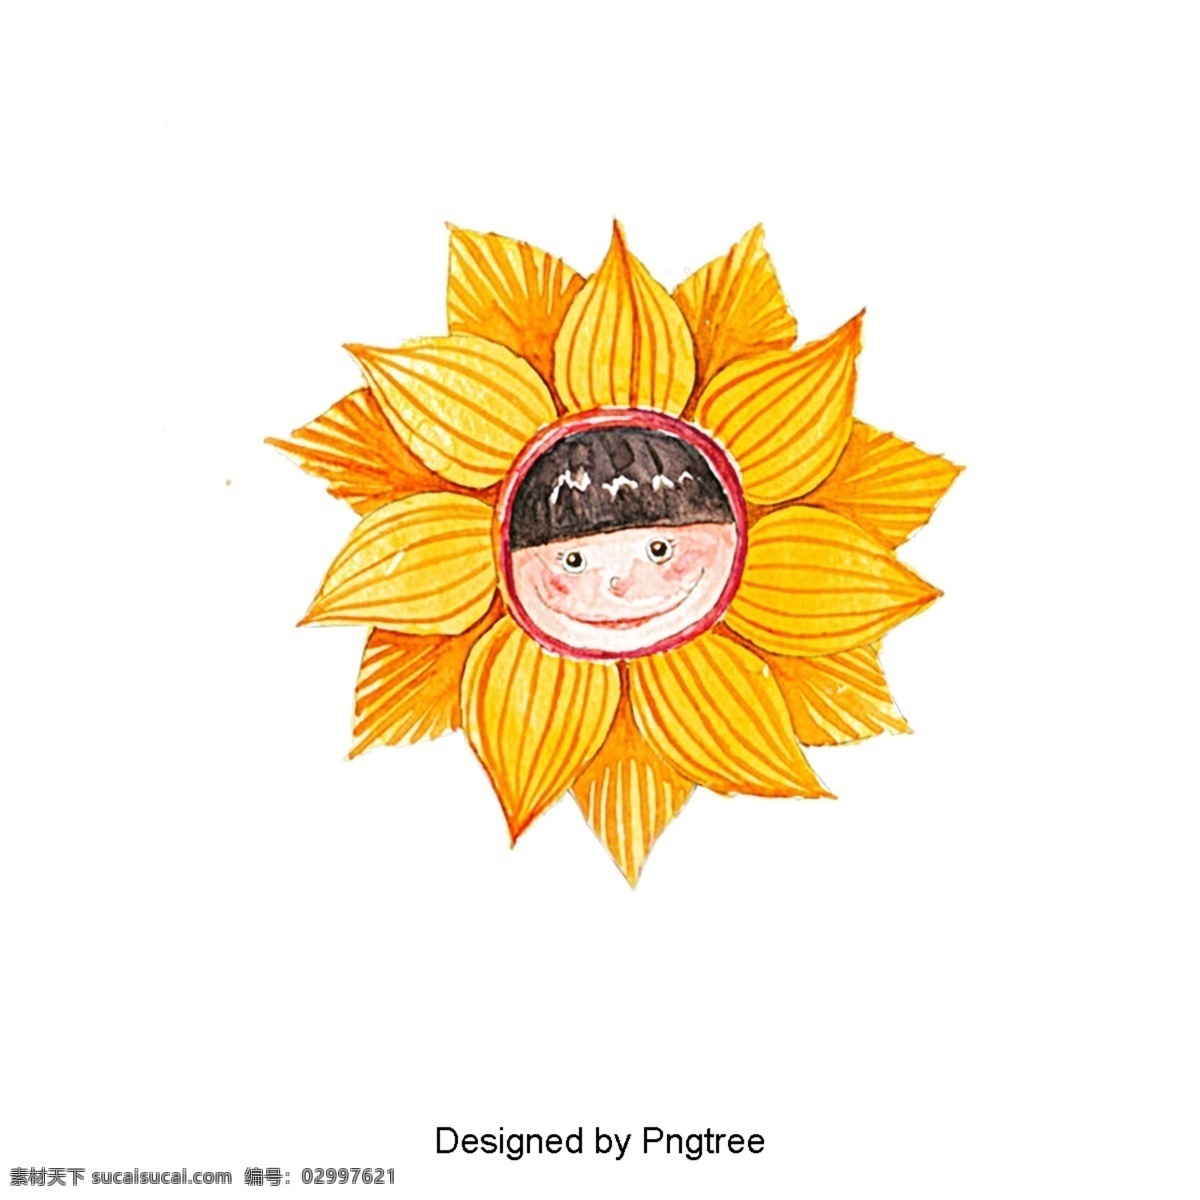 美丽 的卡 通 可爱 手绘 太阳 凉爽 卡通 阳光 天气 黄色 温暖 笑脸